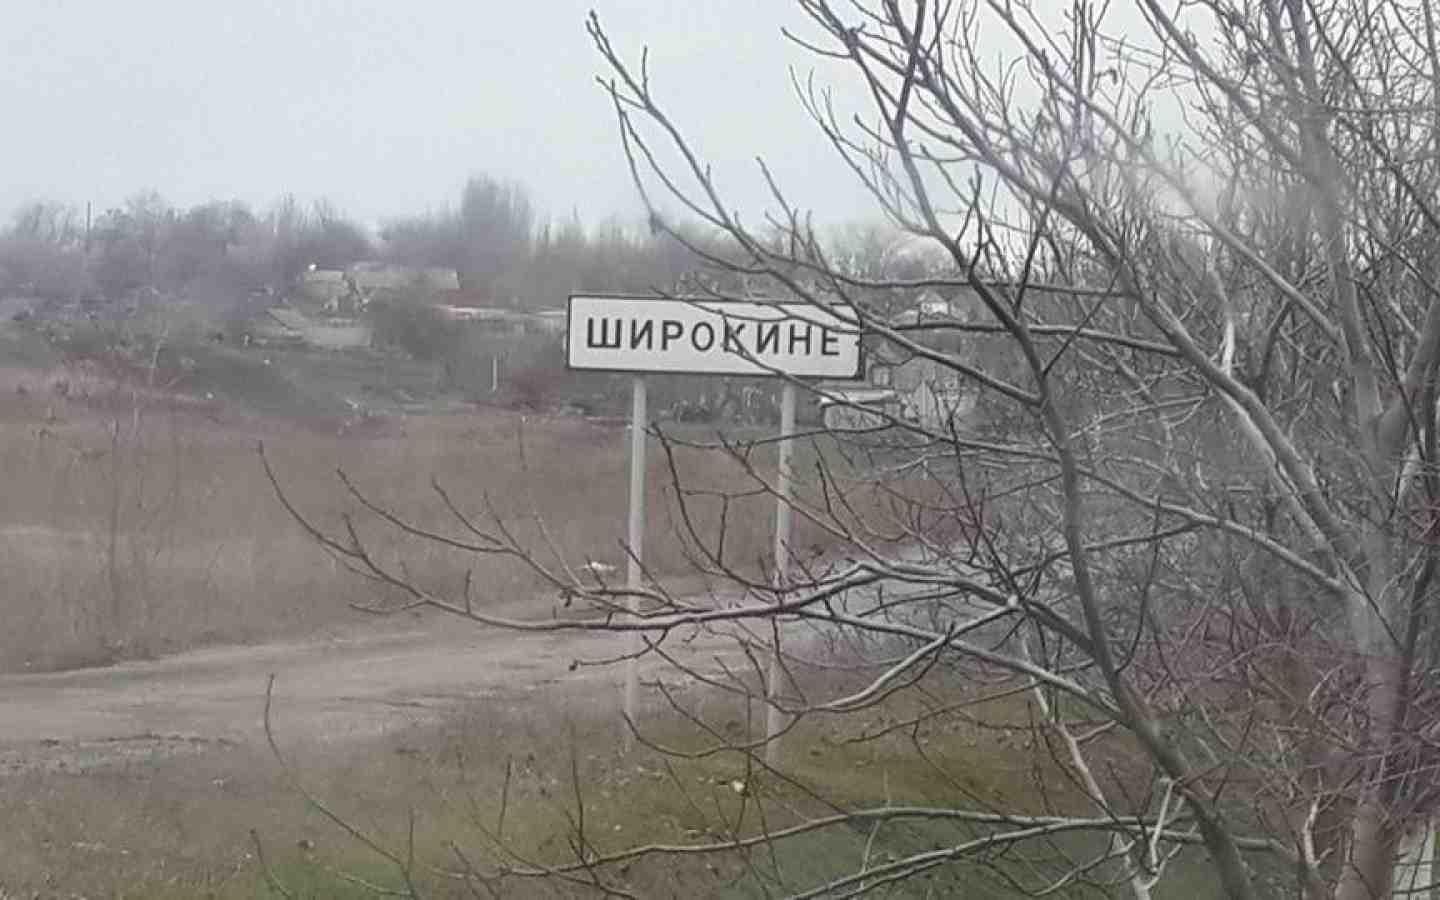 Украинская сторона заявила о взятие под полный контроль населенный пункт Широкино